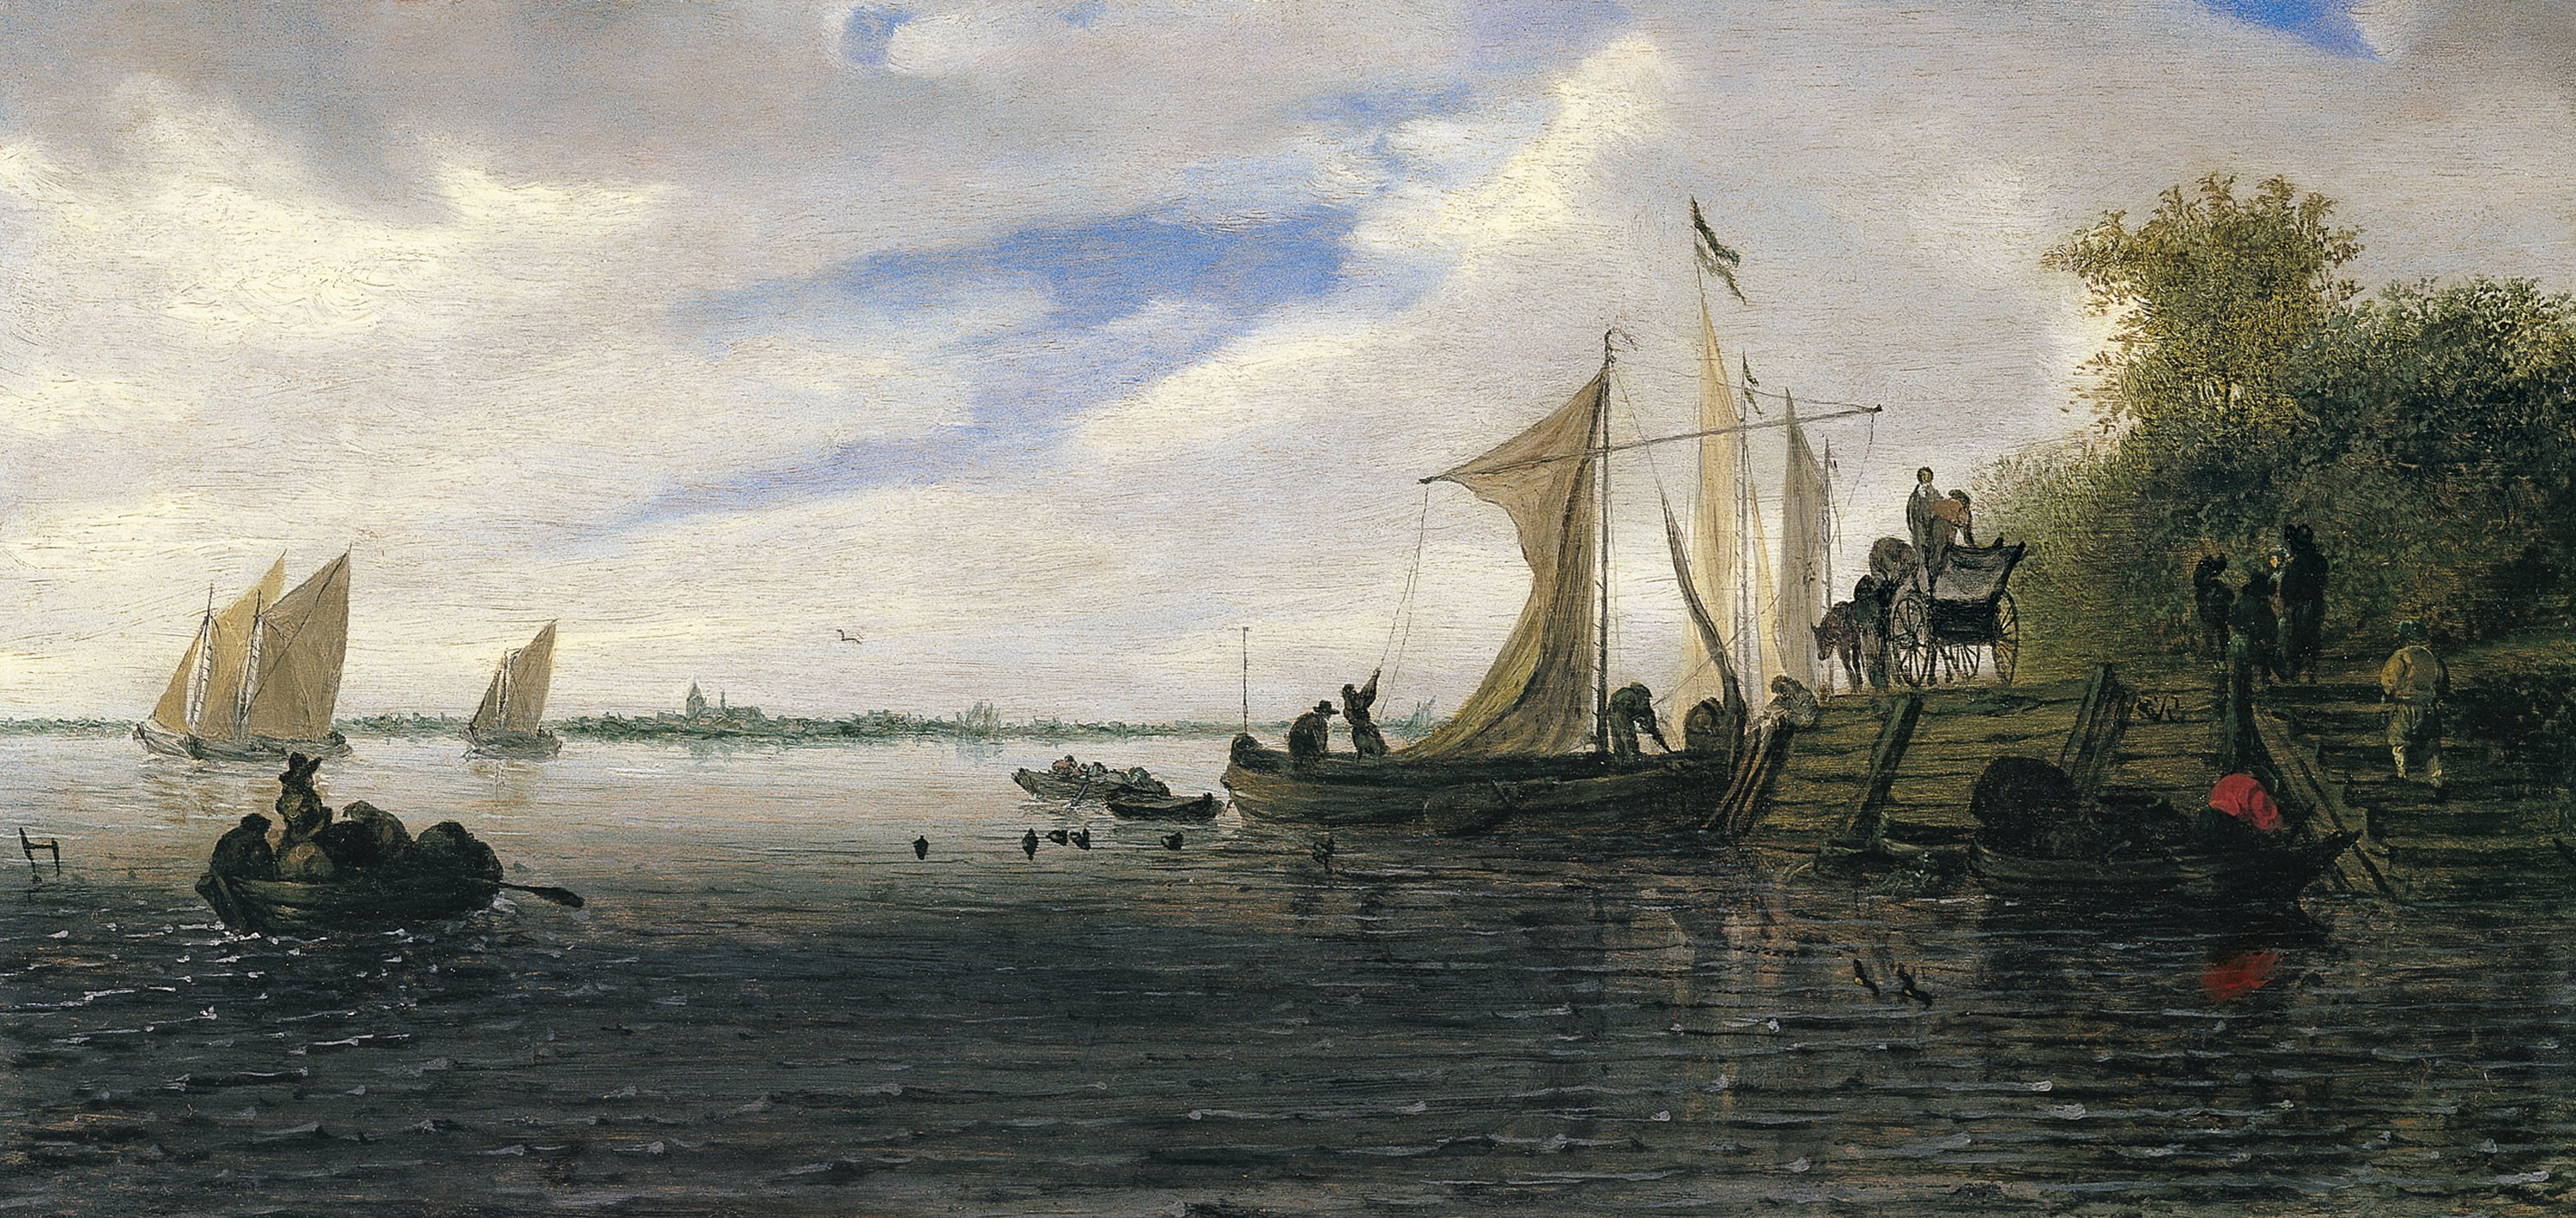 A River Landscape with Figures and a Wagon on a Jetty with Sailing Boats. Paisaje fluvial con figuras y un carro en un embarcadero y barcas navegando, c. 1660-1670